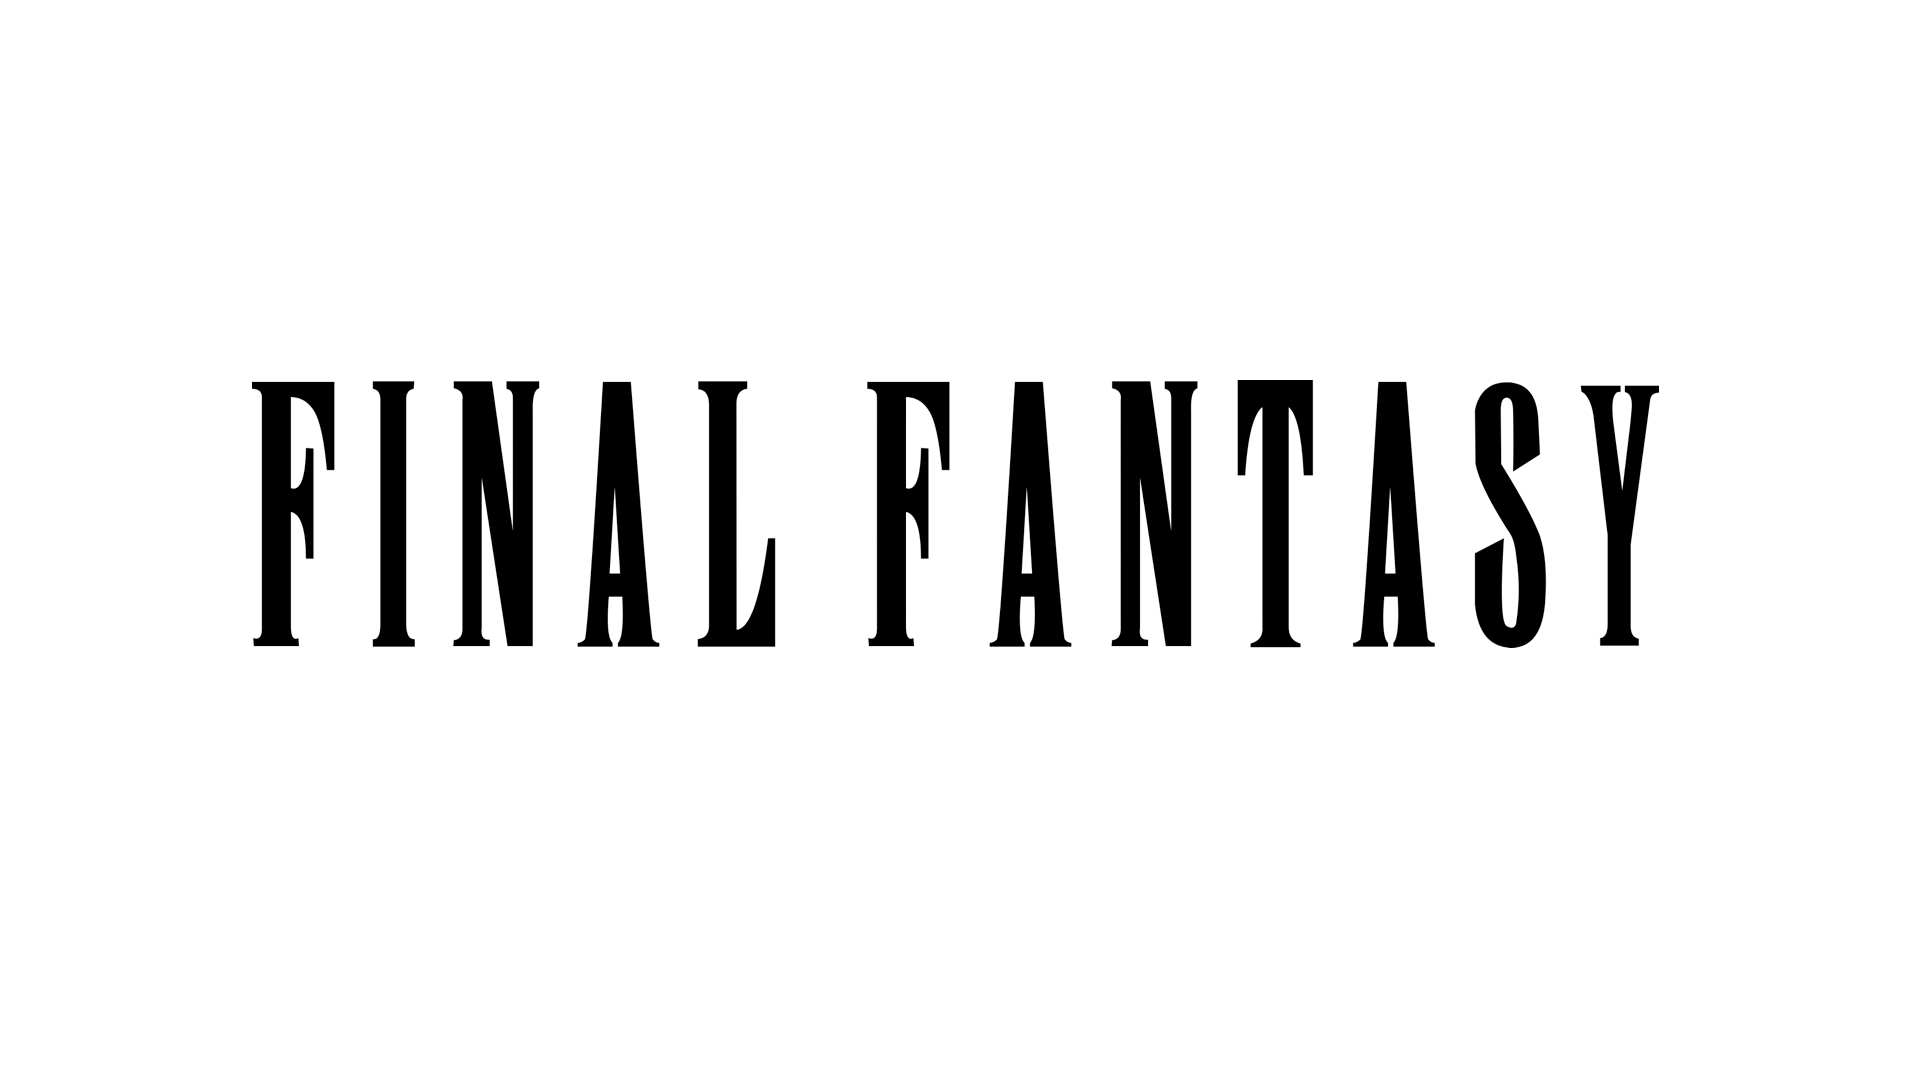 Suaicheantas Final Fantasy